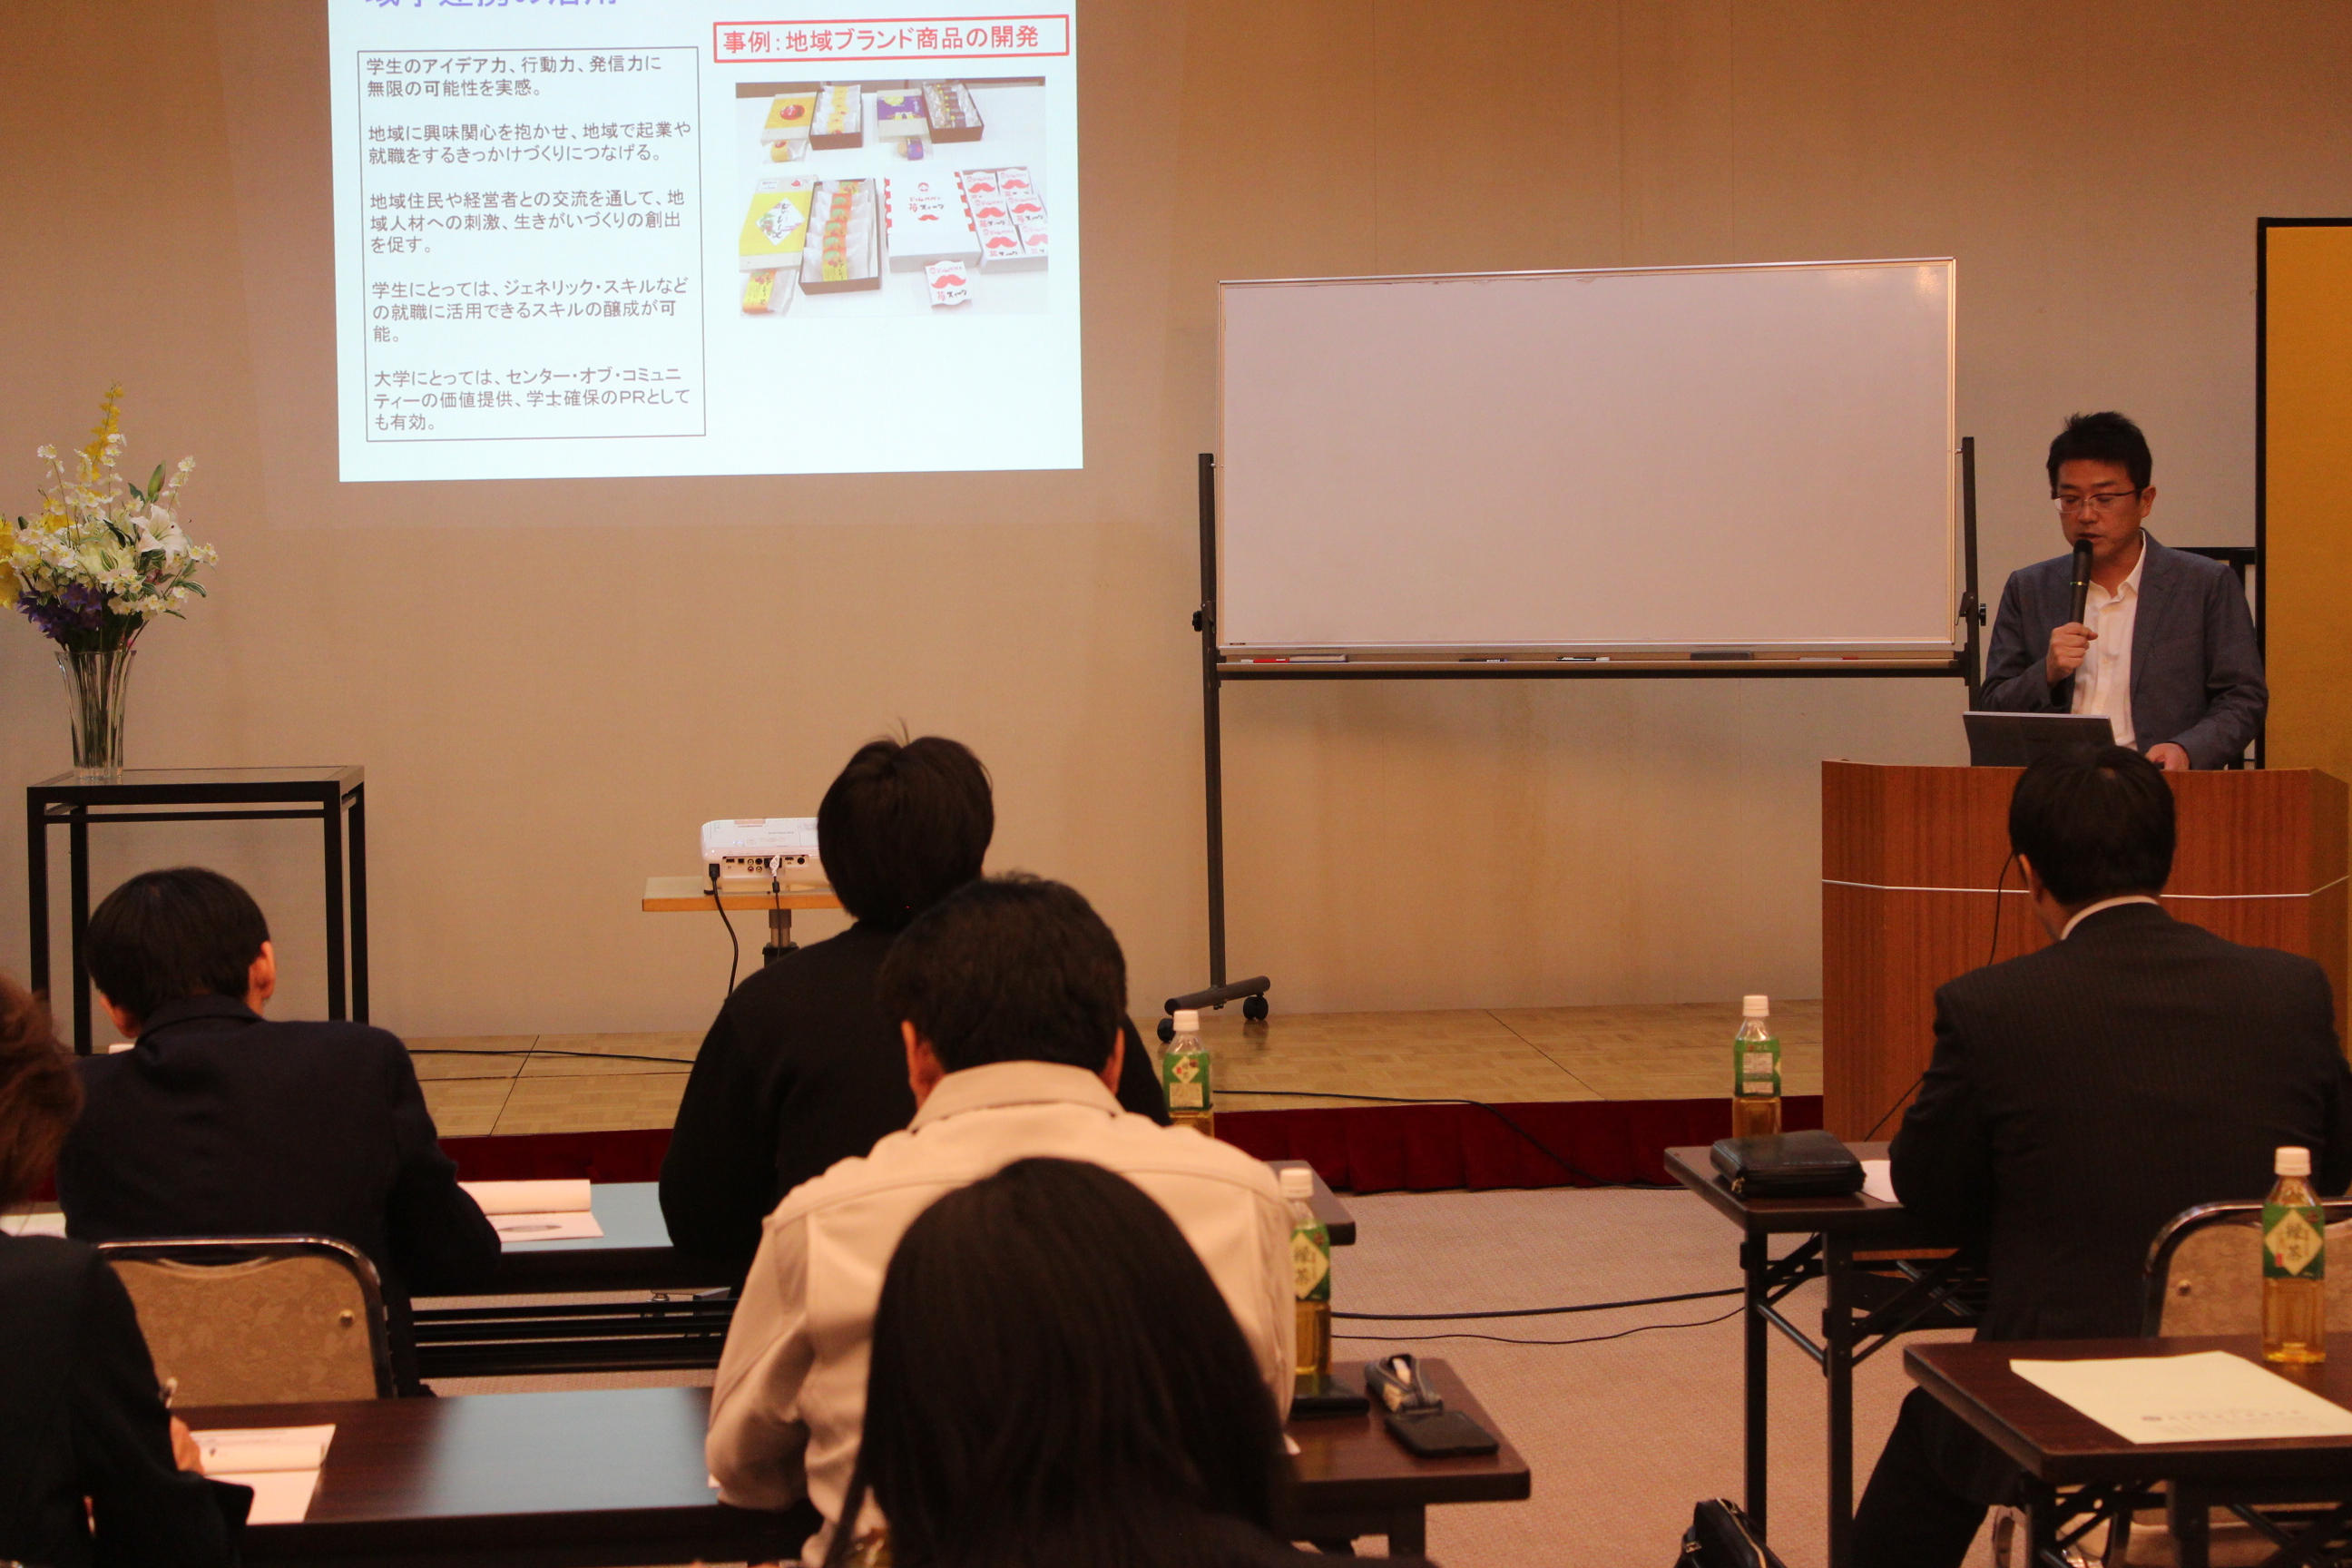 【講演会】長野県商工会連合会主催「地方創生は人づくりから」